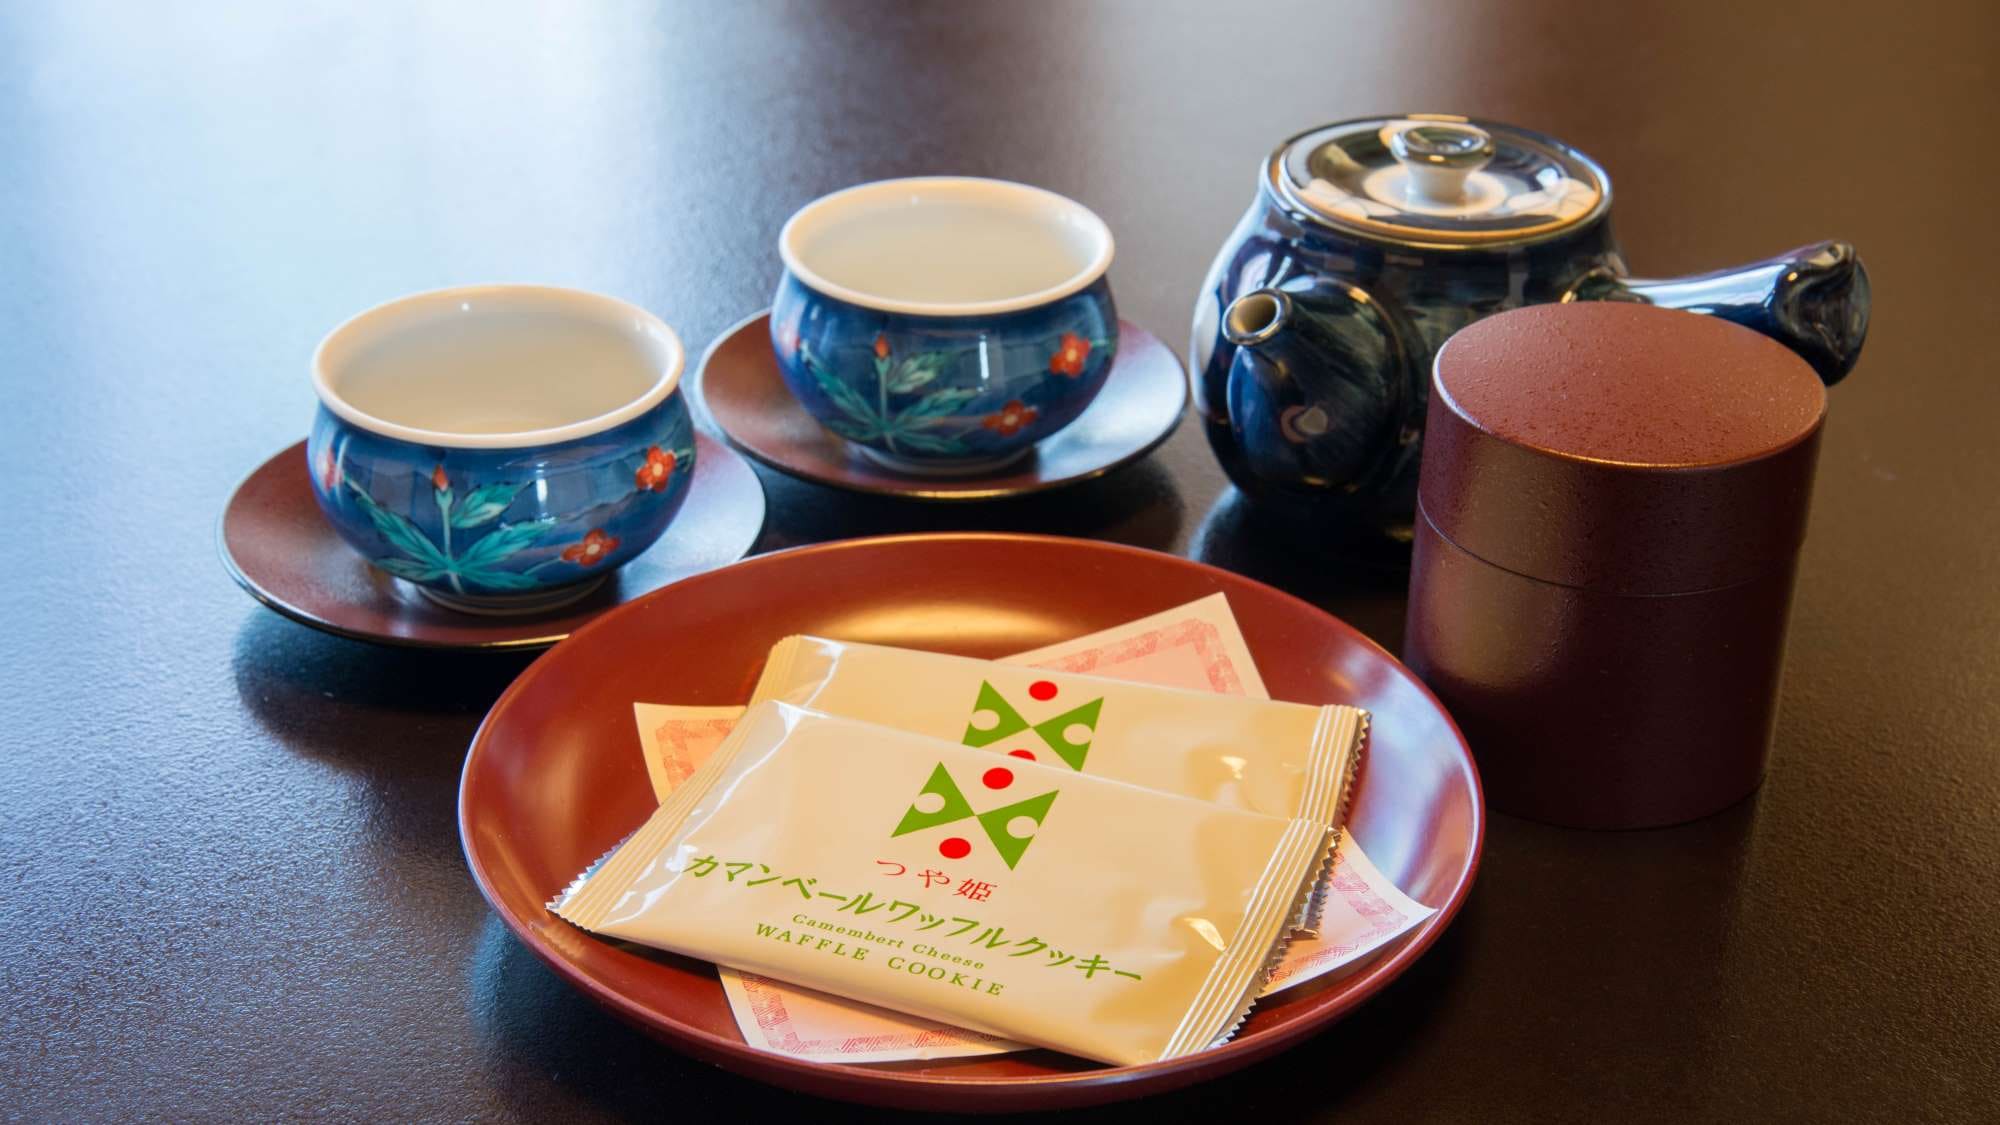 Di dalam kamar, kita akan menyiapkan manisan dan teh yang terbuat dari "Tsuyahime" dari Yamagata.